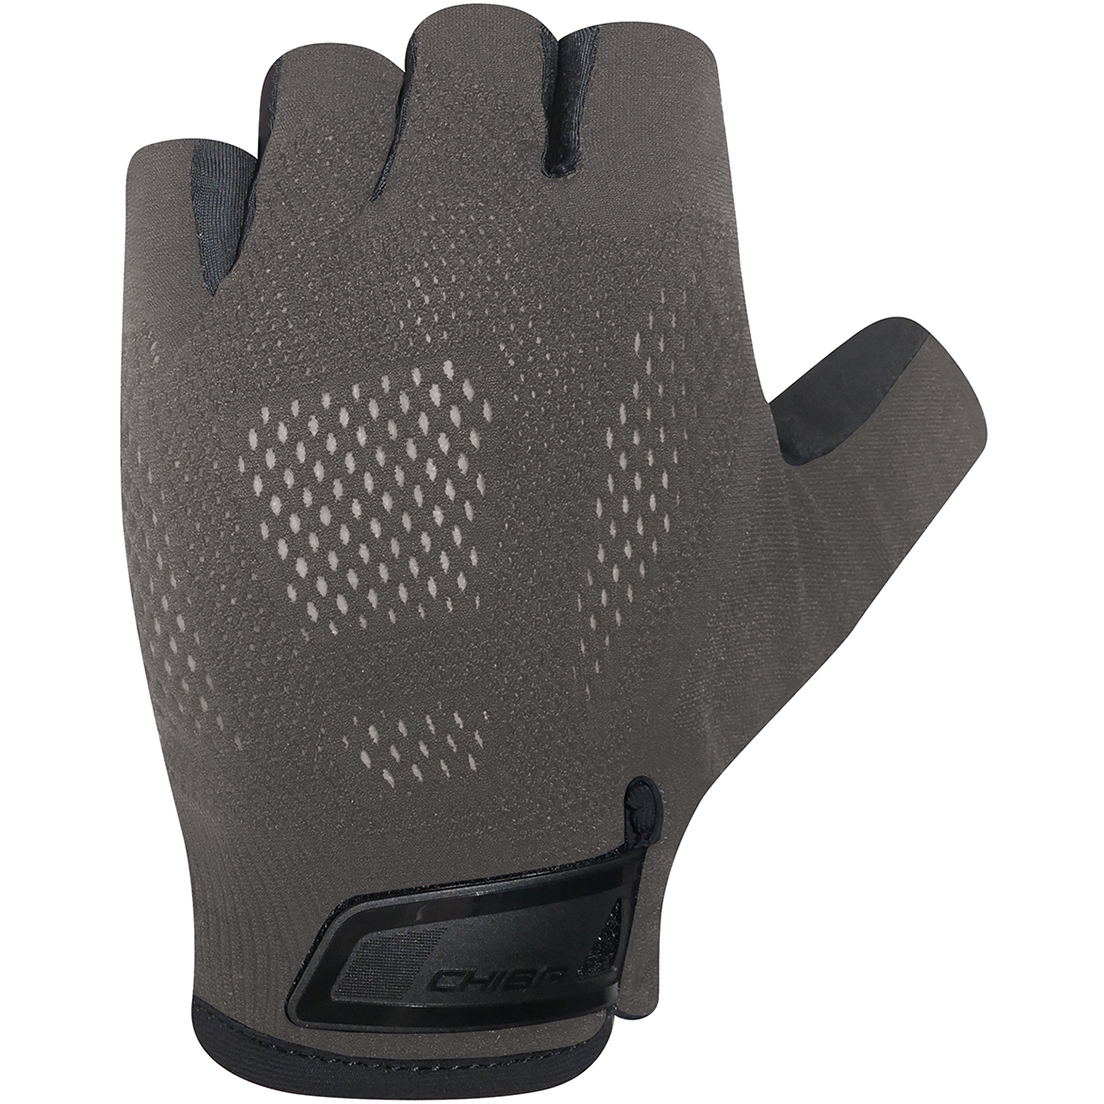 Productfoto van Chiba Gel Evolution Handschoenen met Korte Vingers - dark grey